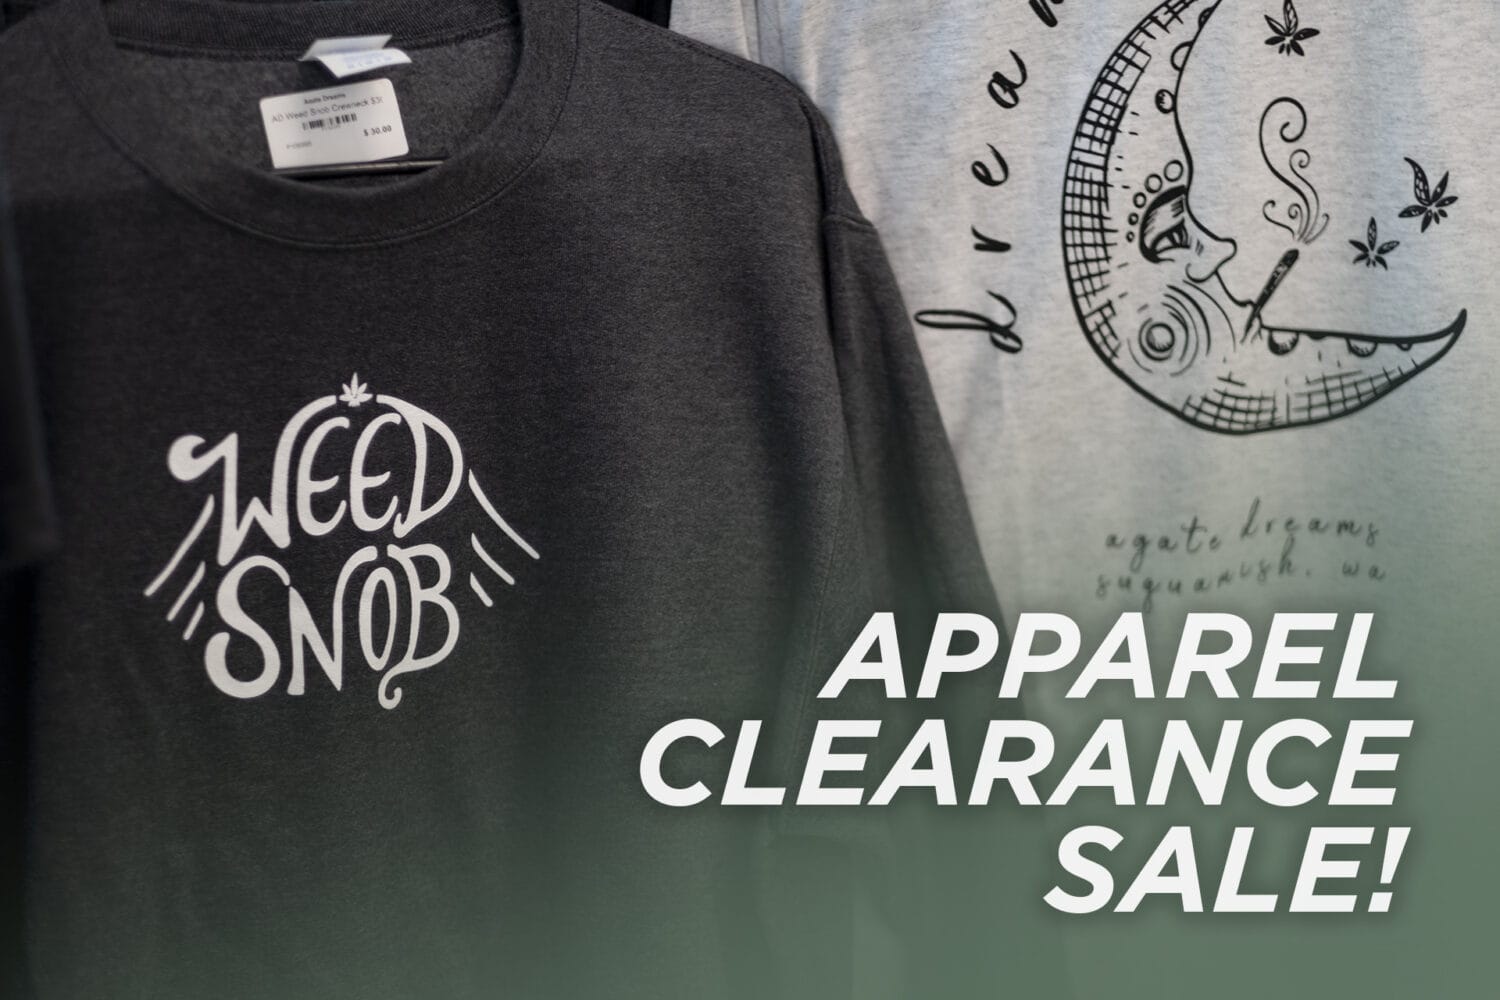 Apparel Clearance Sale